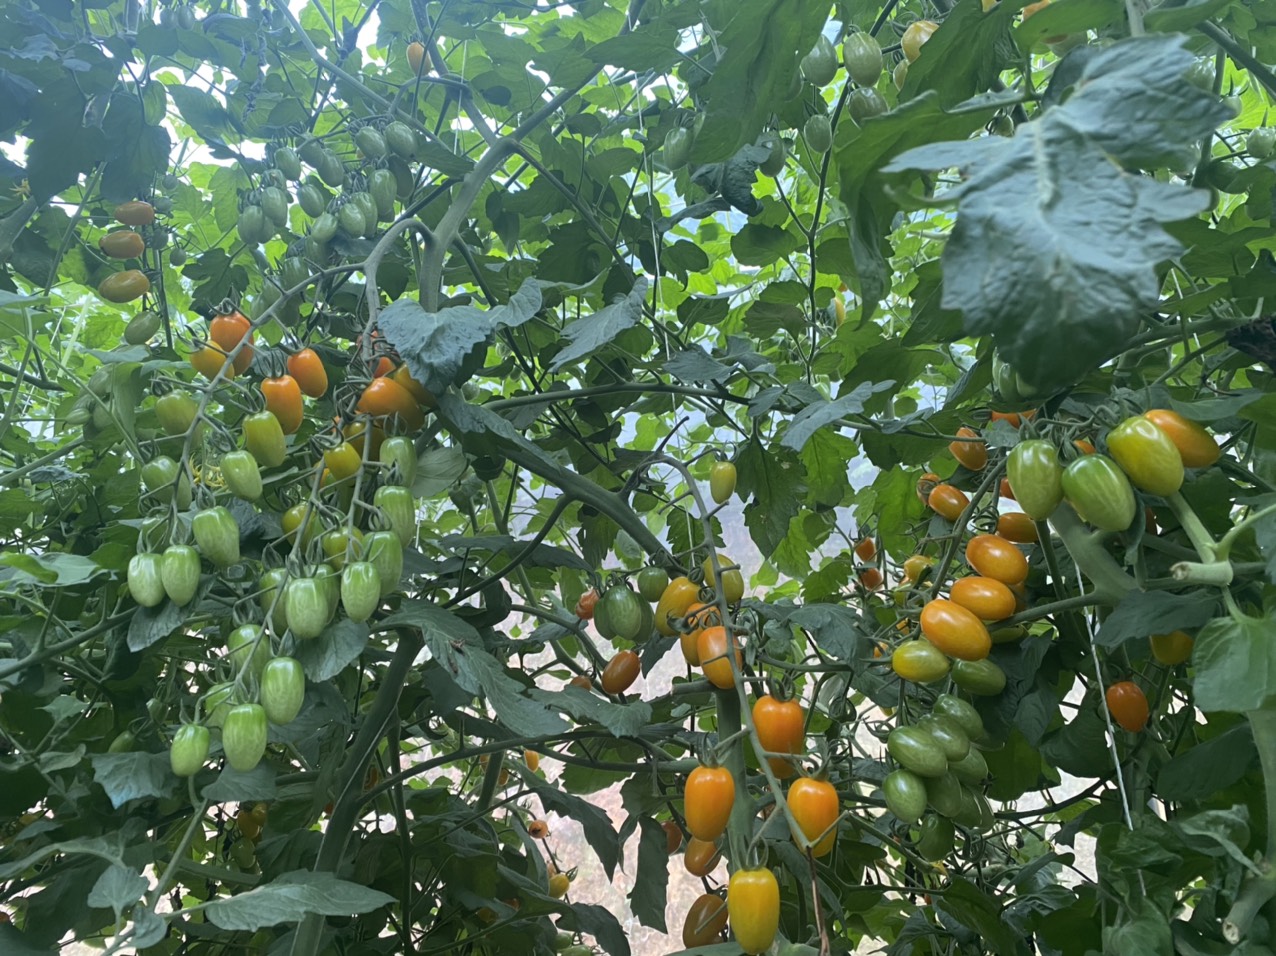 Sau 2 tháng trồng, cà chua Nova đã bắt đầu bói quả và hiện tại đã cho thu hoạch 2 tấn cà chua cung cấp ra thị trường. Dự kiến sản lượng cả vụ của giống cà chua Nova ở Sa Pa sẽ đạt từ 6-7 tấn. 